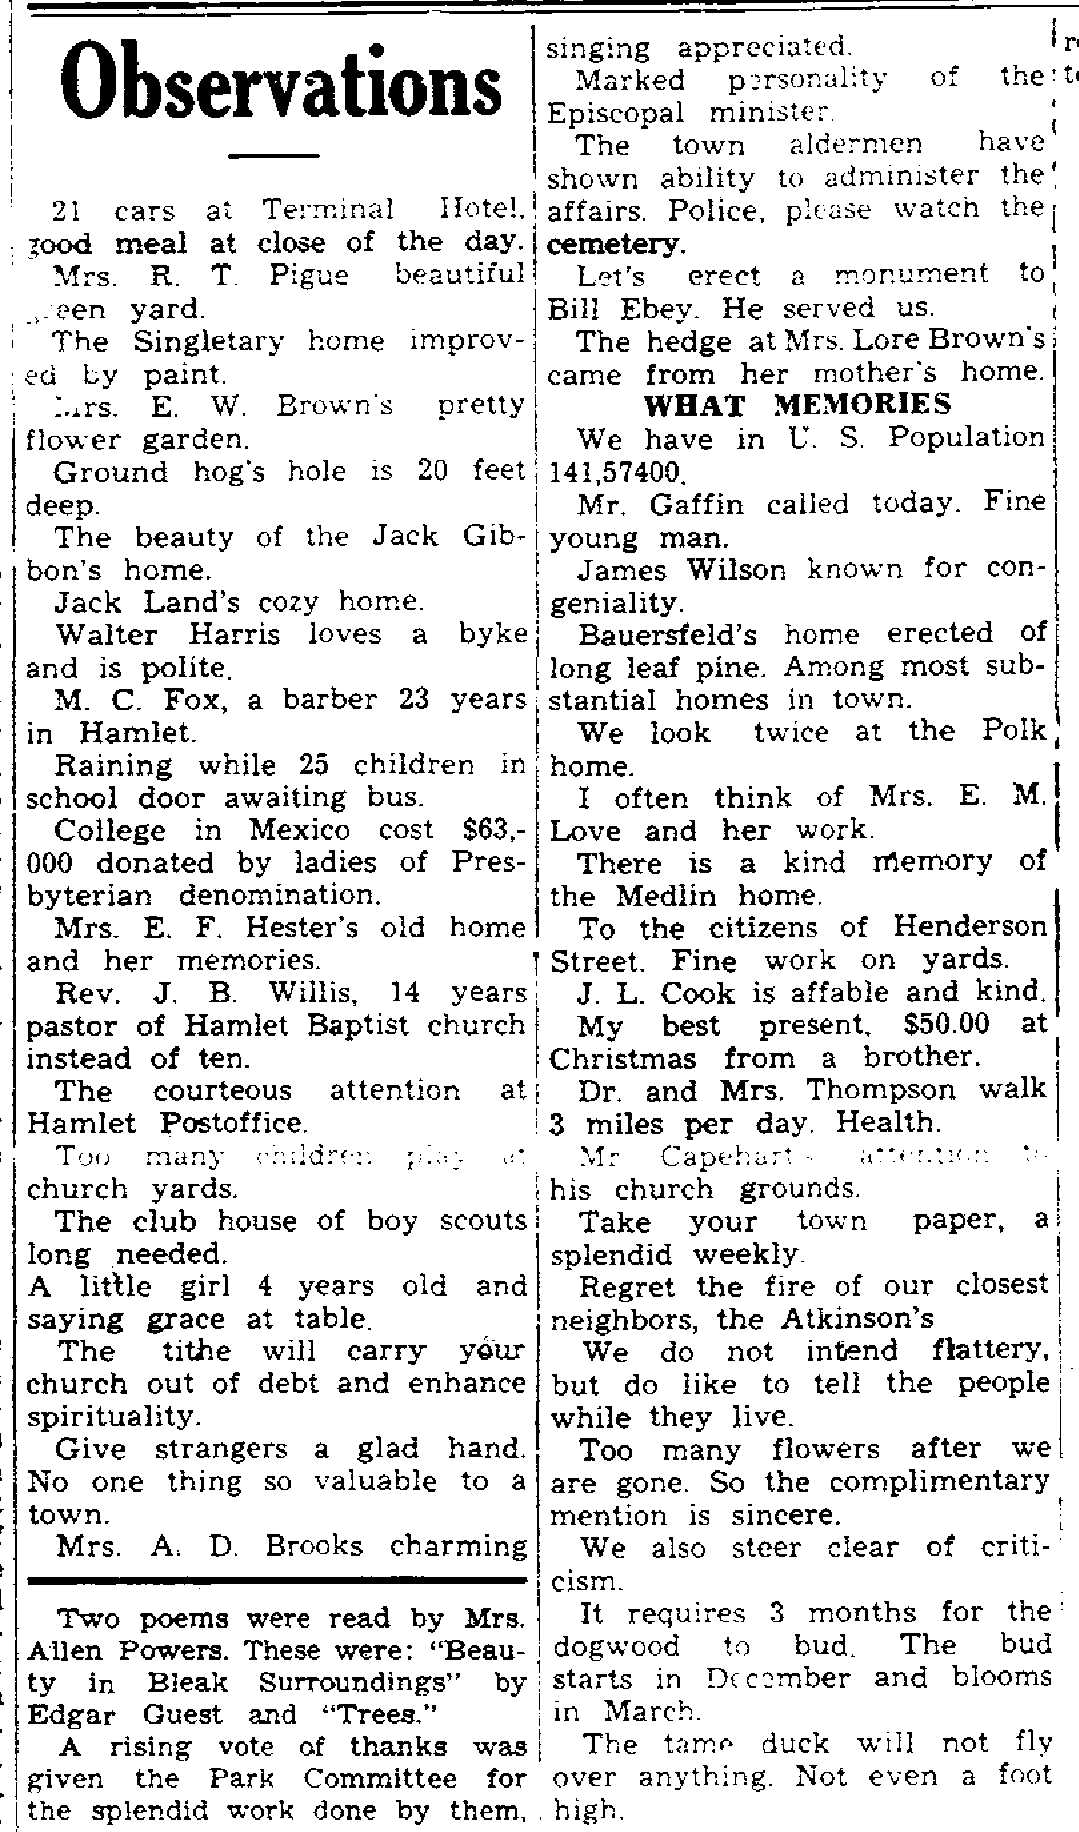 3-22-1935 Hamlet News observations.jpg